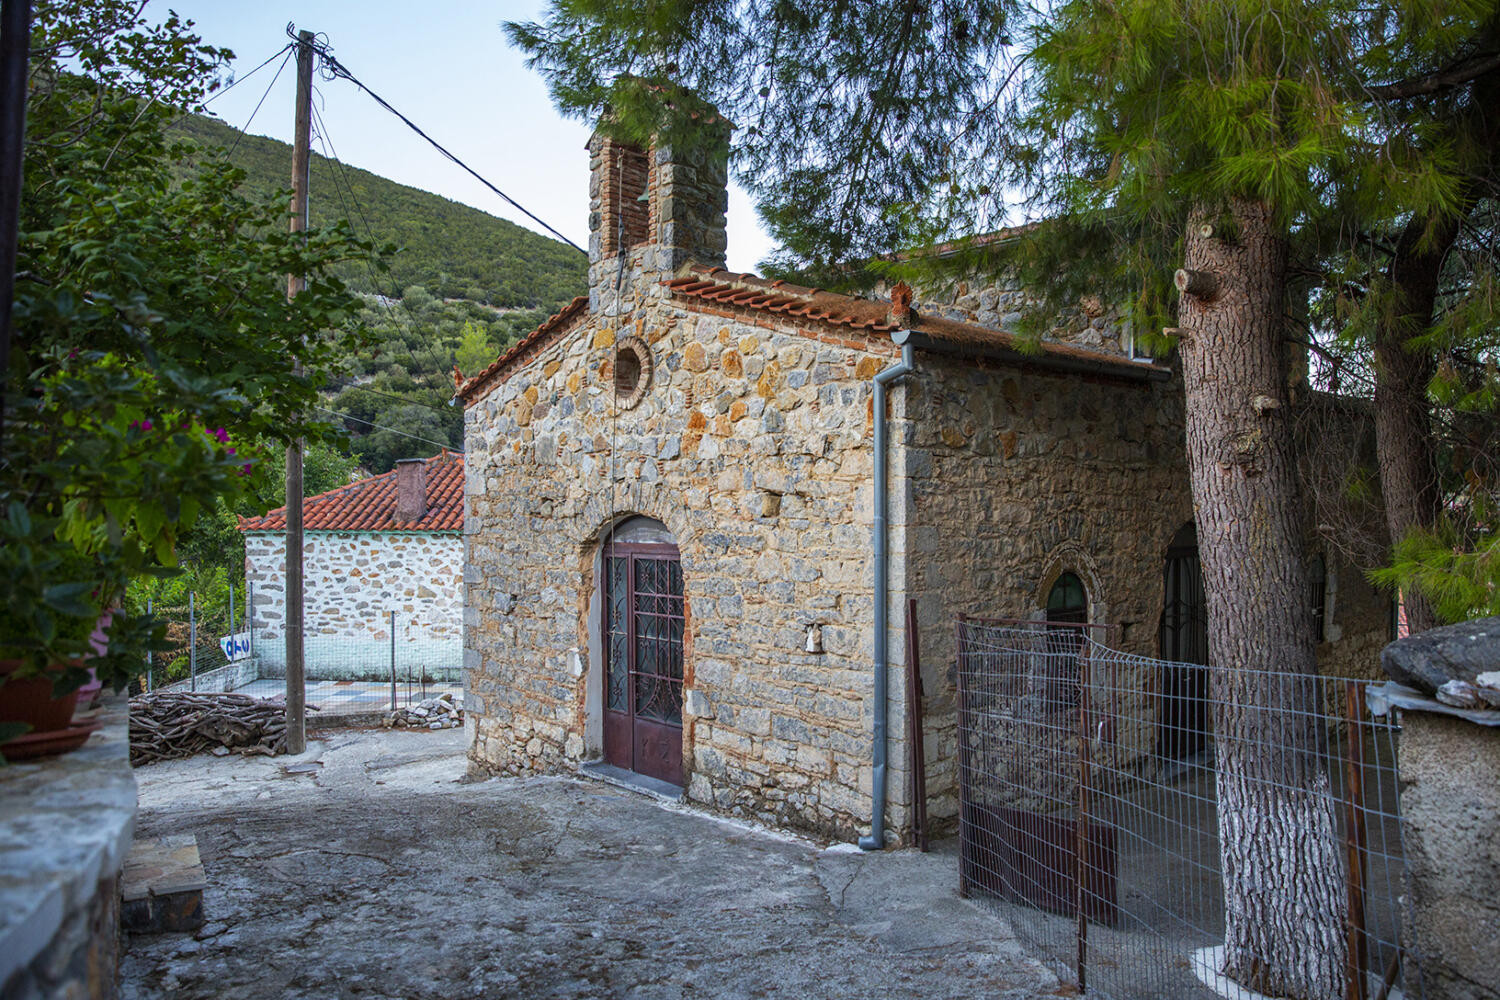 Βυζαντινή εκκλησία Αγίου Γεωργίου, χωριό Παρθένι. Φωτογραφία: ©Βασίλης Συκάς, για τον Δήμο Κύμης-Αλιβερίου